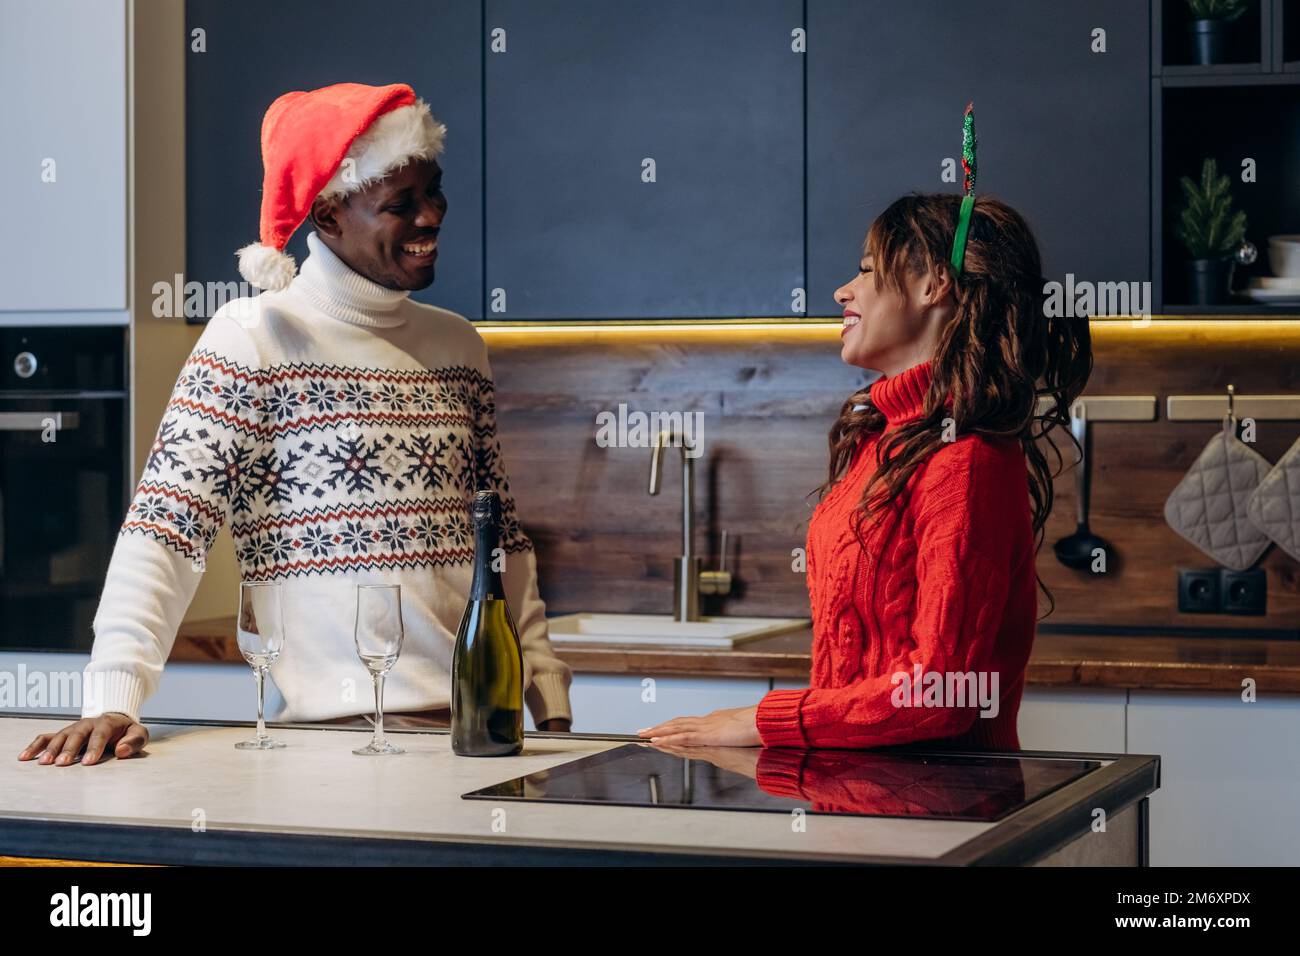 La mujer de pelo rizado y el hombre afroamericano con suéteres impresos festivos beben champán y celebran la Navidad de pie en la cocina Foto de stock